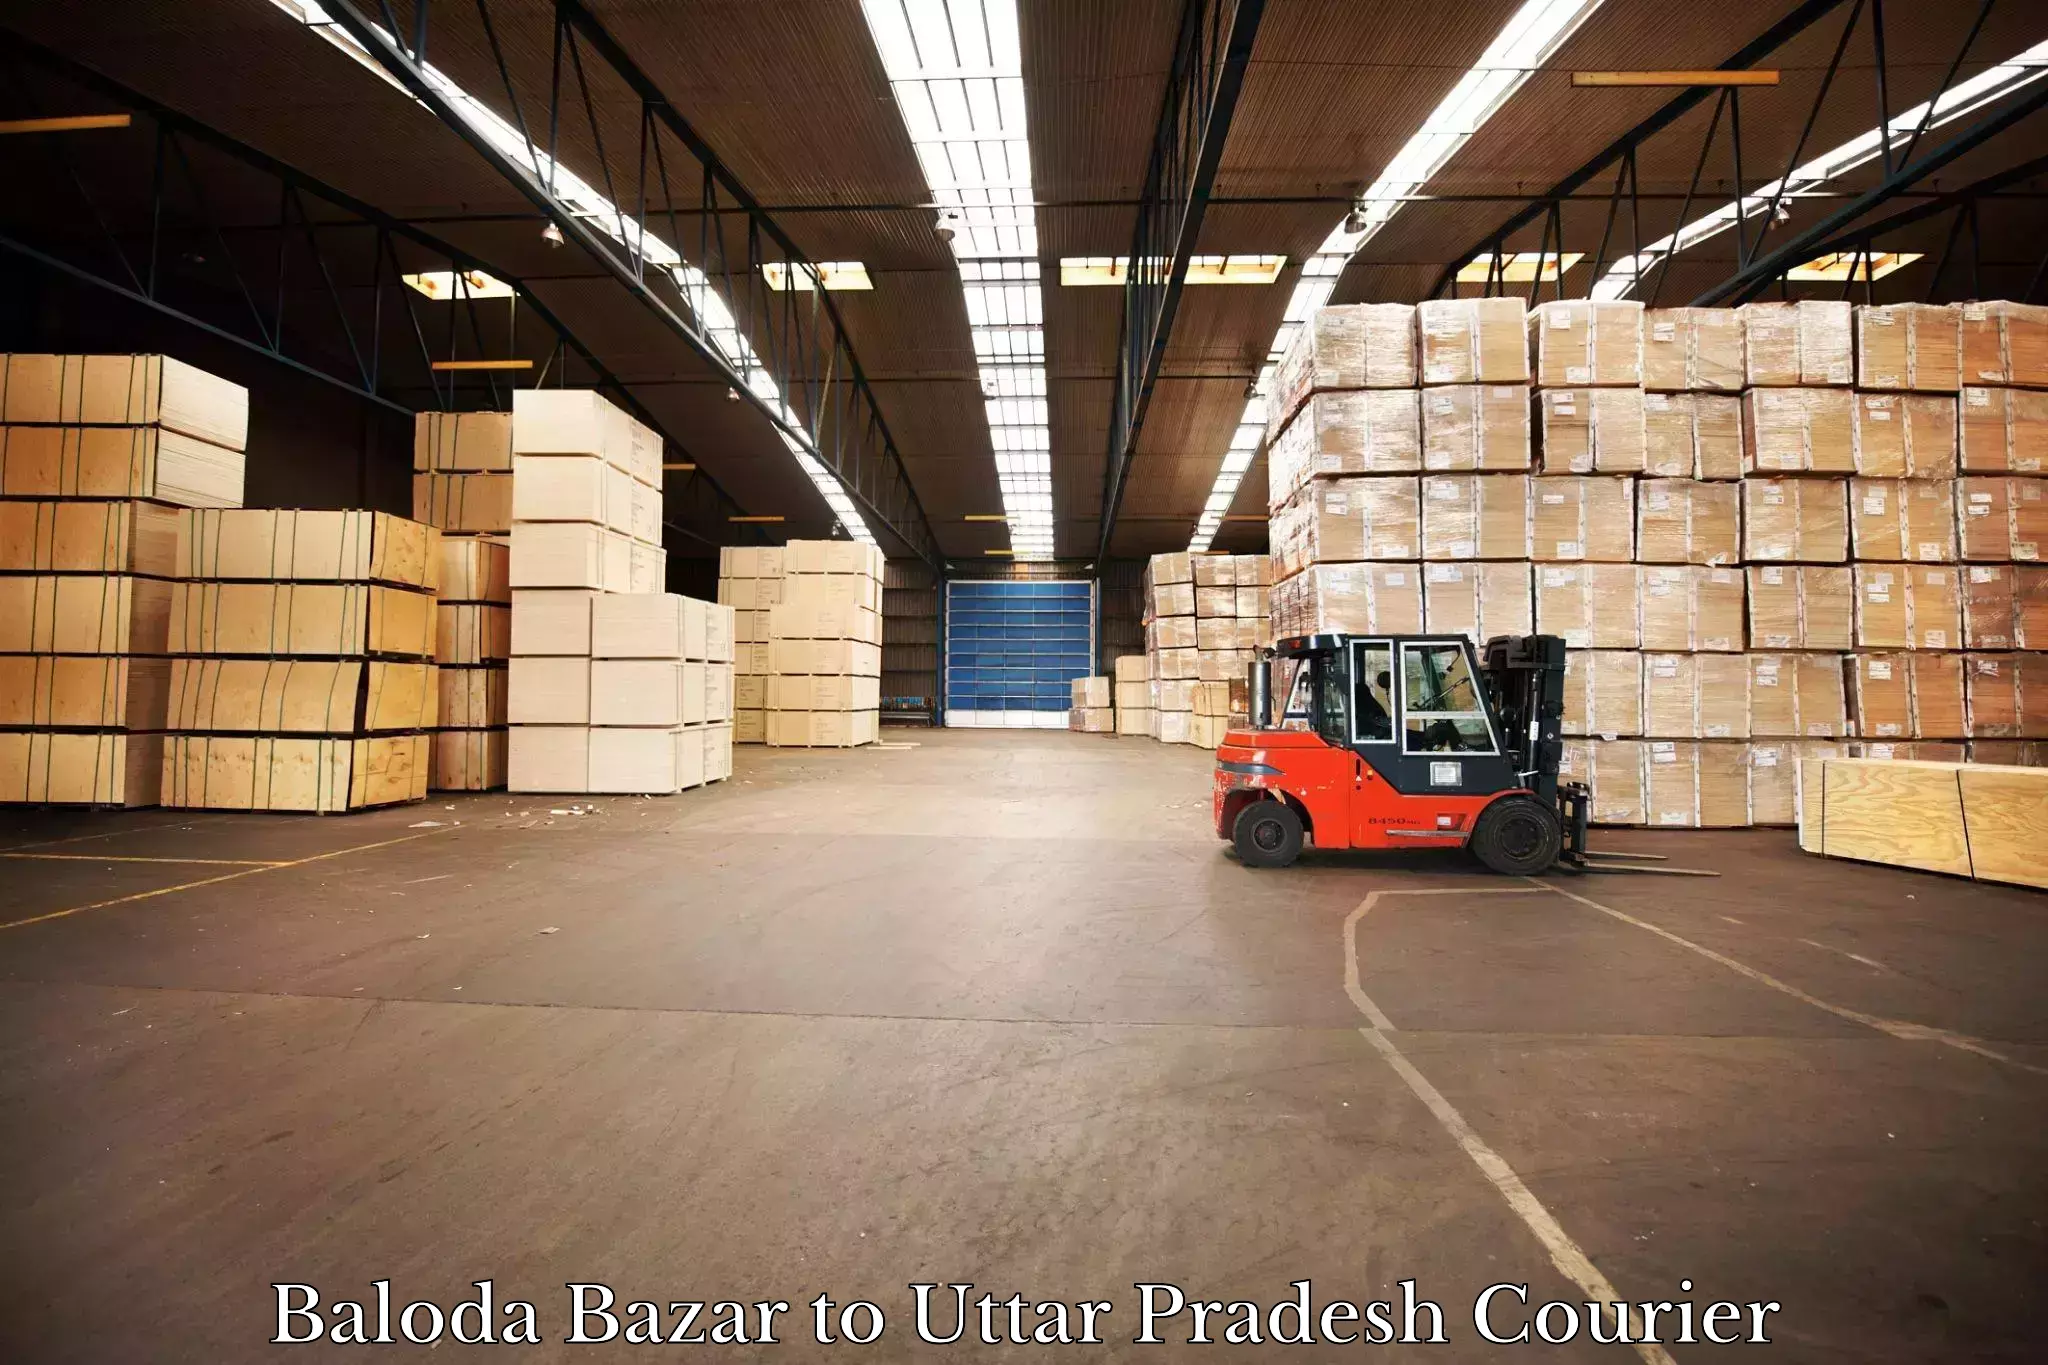 Expedited shipping methods Baloda Bazar to Varanasi